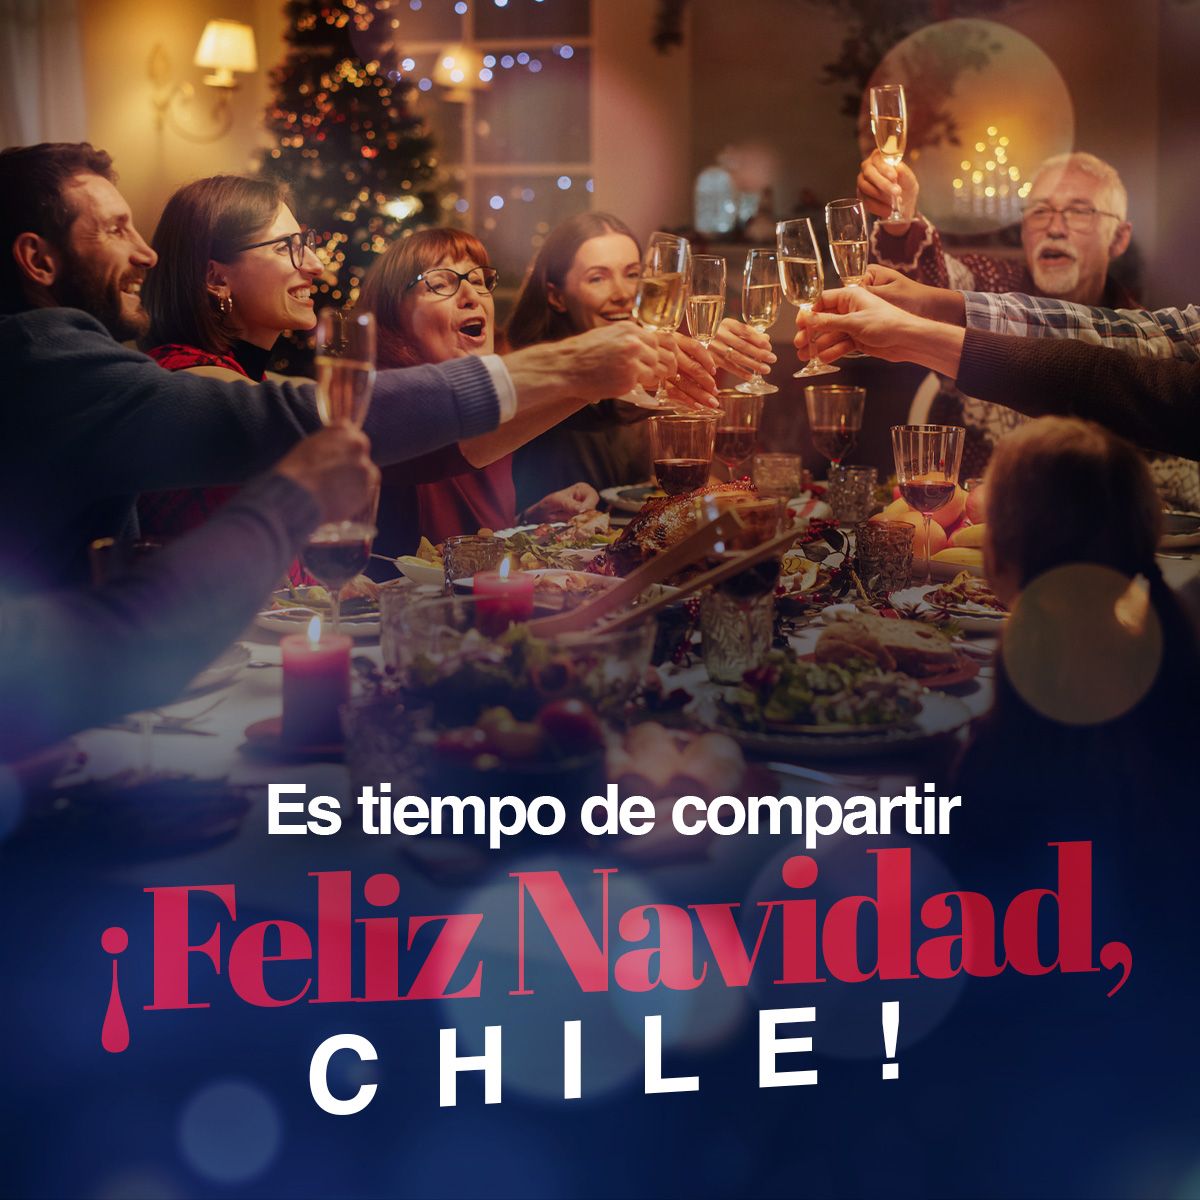 Es tiempo de compartir ¡Feliz Navidad, Chile!